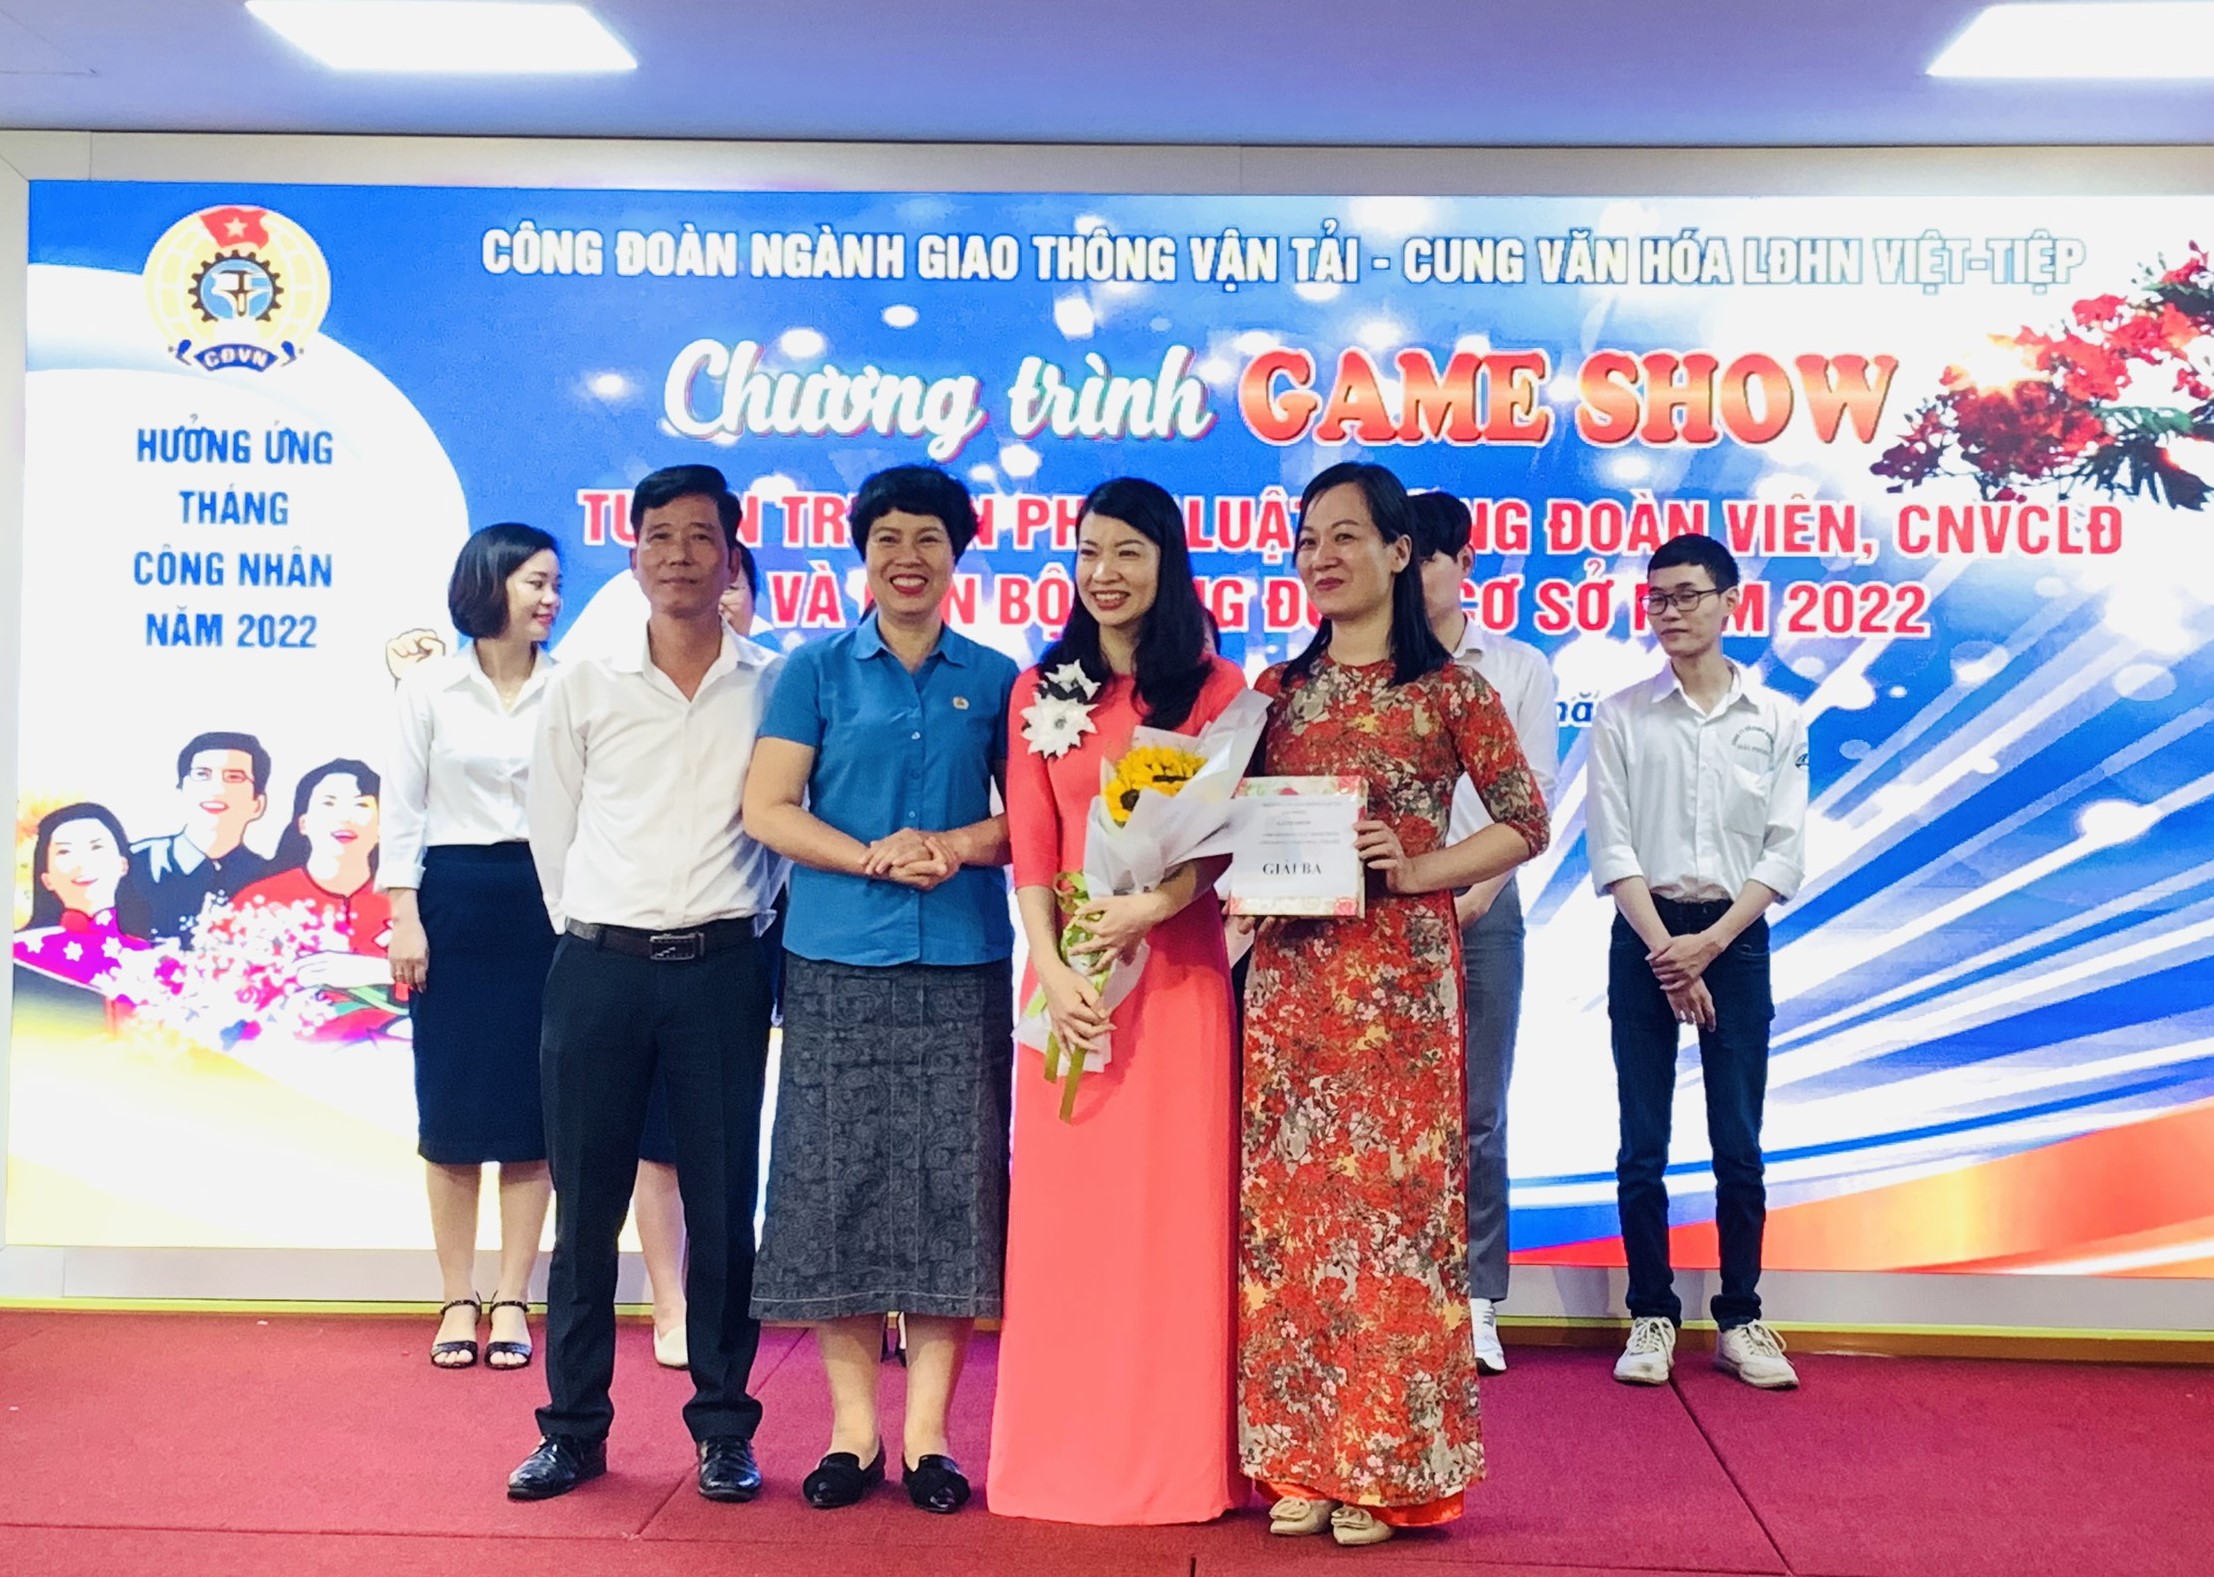 Bà Trần Thị Mai - Chủ tịch Công đoàn ngành GTVT Hải Phòng trao giải cho đội đạt giải Nhì